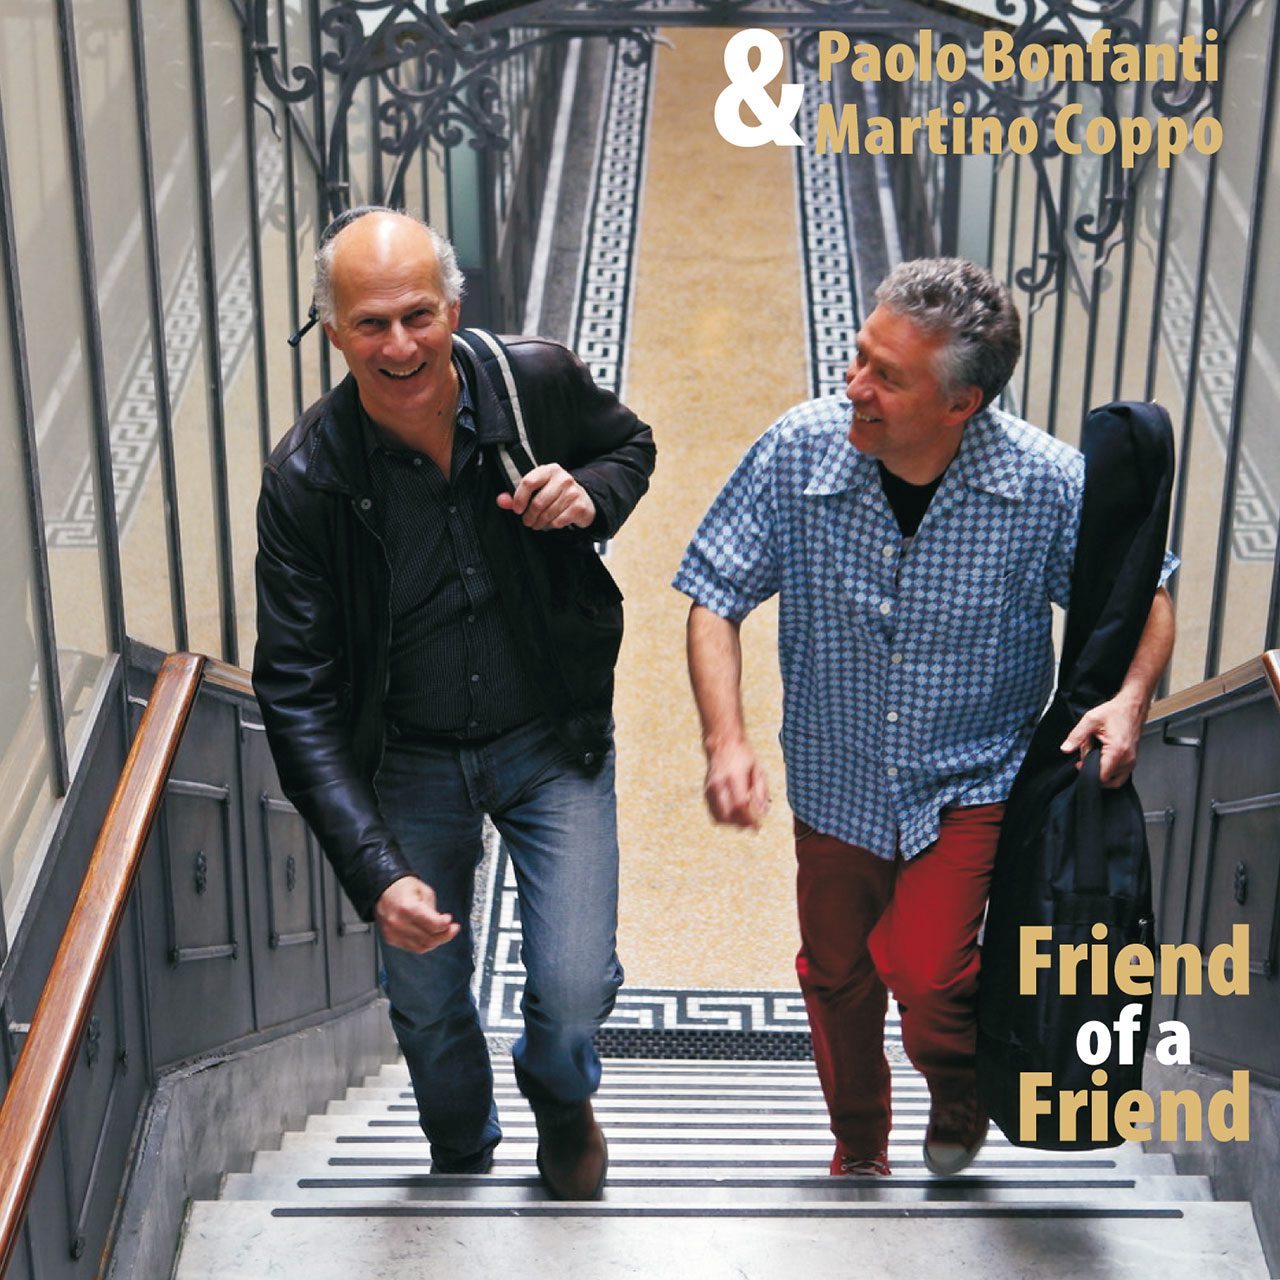 Paolo Bonfanti & Martino Coppo - Friend Of A Friend cover album